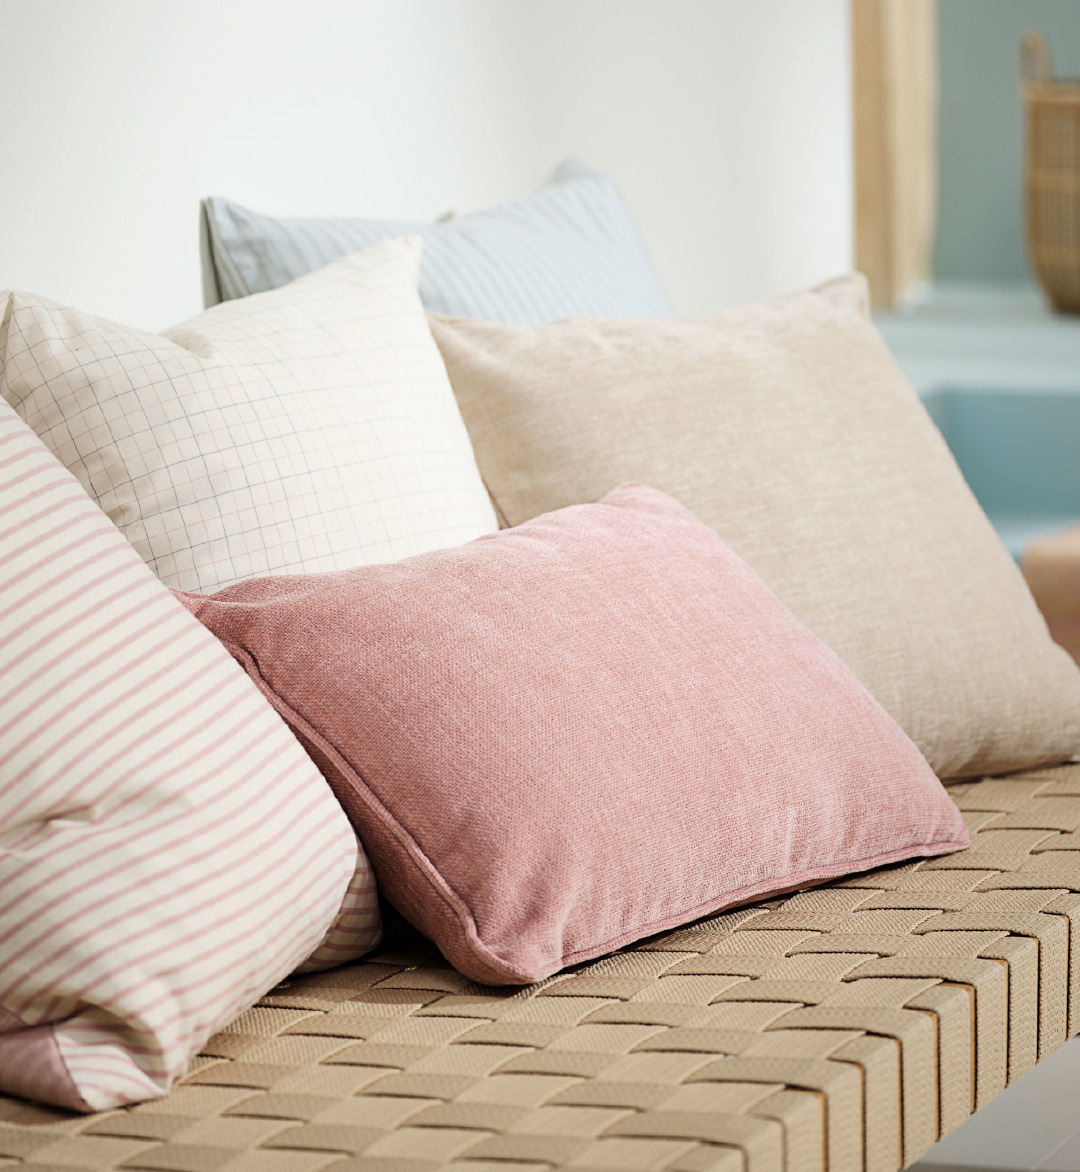 Cuscini colorati su divanetto